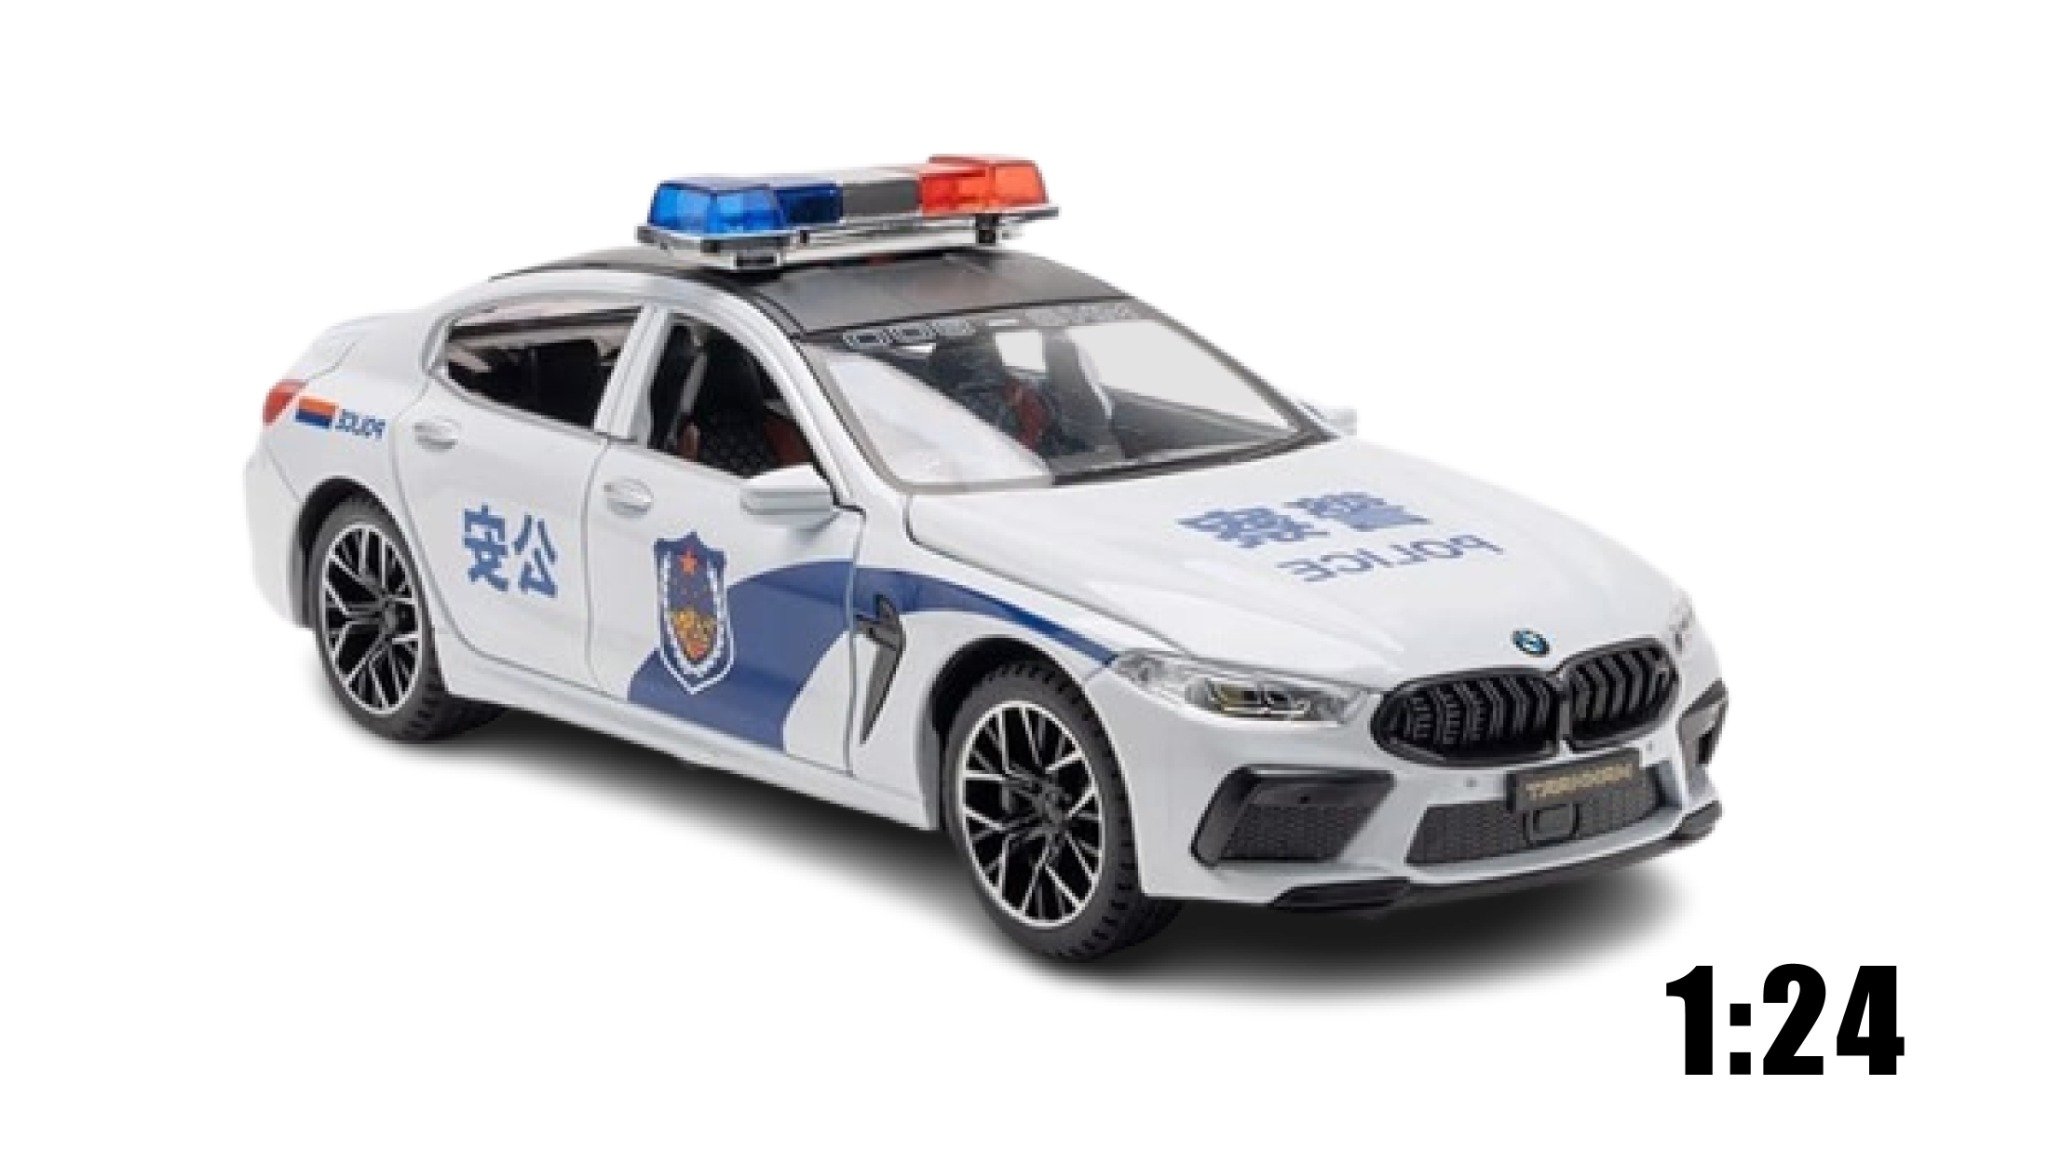  Xe mô hình ô tô Bmw M8 Police White tỉ lệ 1:24 Jinlifang OT197 